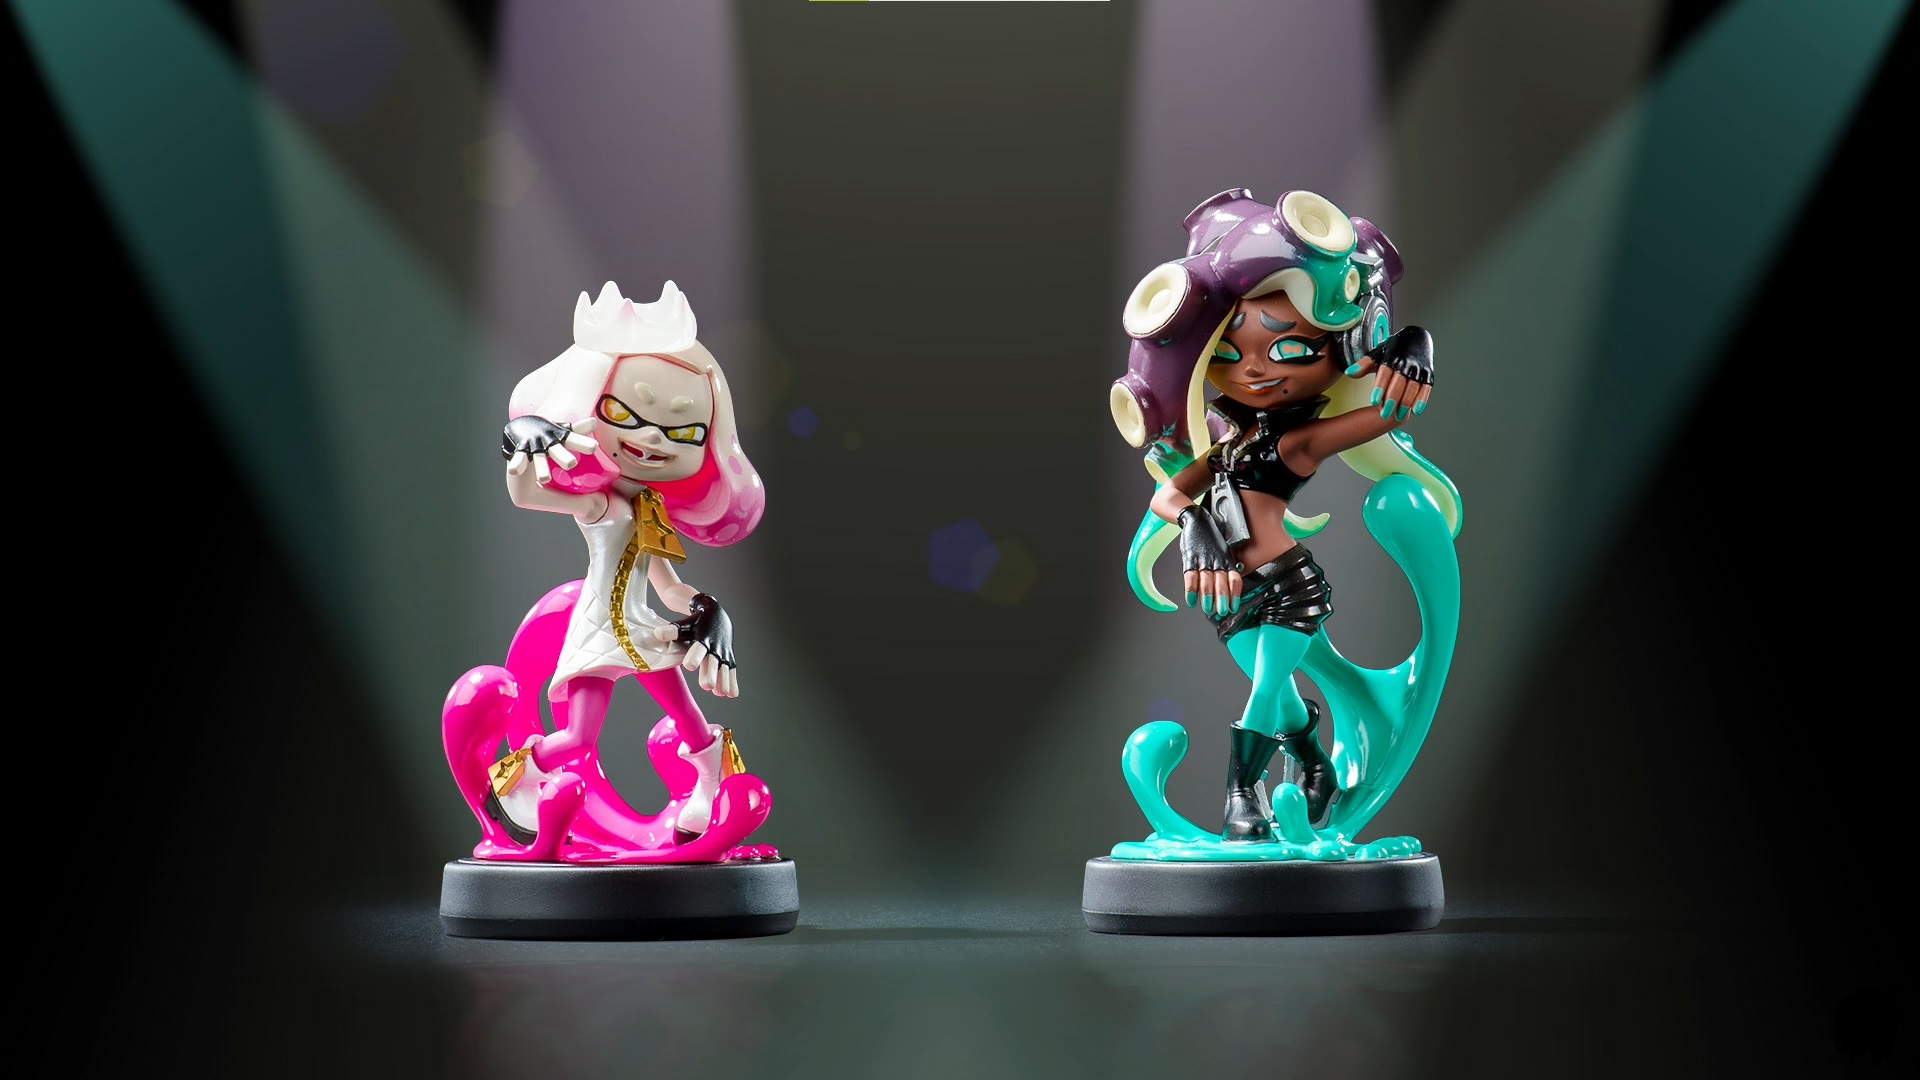 Pearl and Marina Splatoon 2 amiibo figures